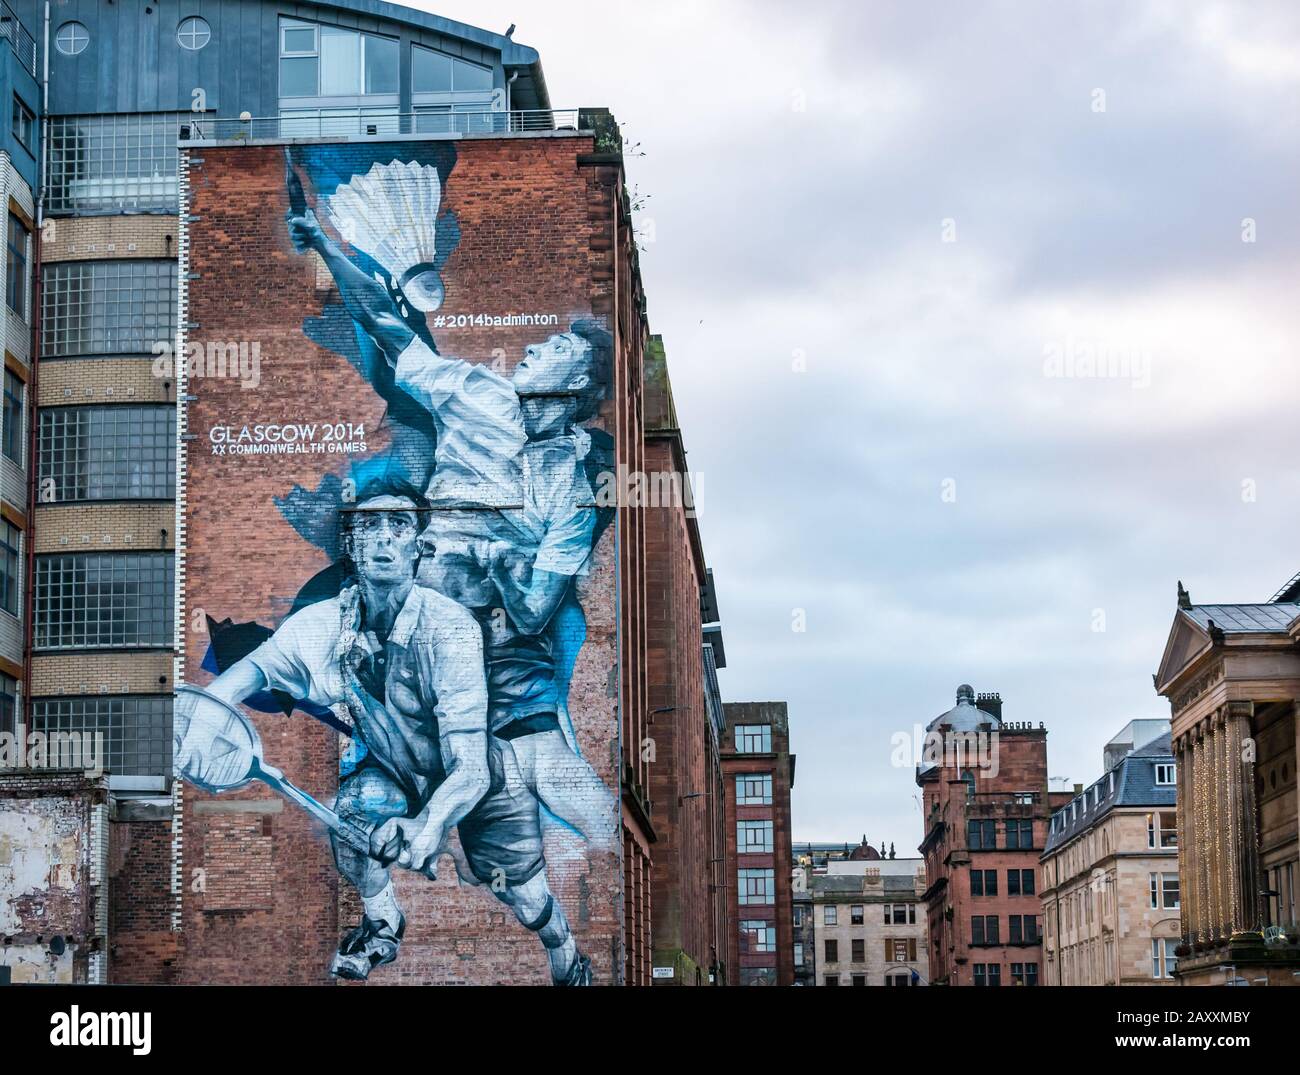 Guido van Helten murale de Kieran Merrilees, joueur écossais de badminton pour les Jeux du Commonwealth de 2014, Wilson Street, Glasgow, Ecosse, Royaume-Uni Banque D'Images